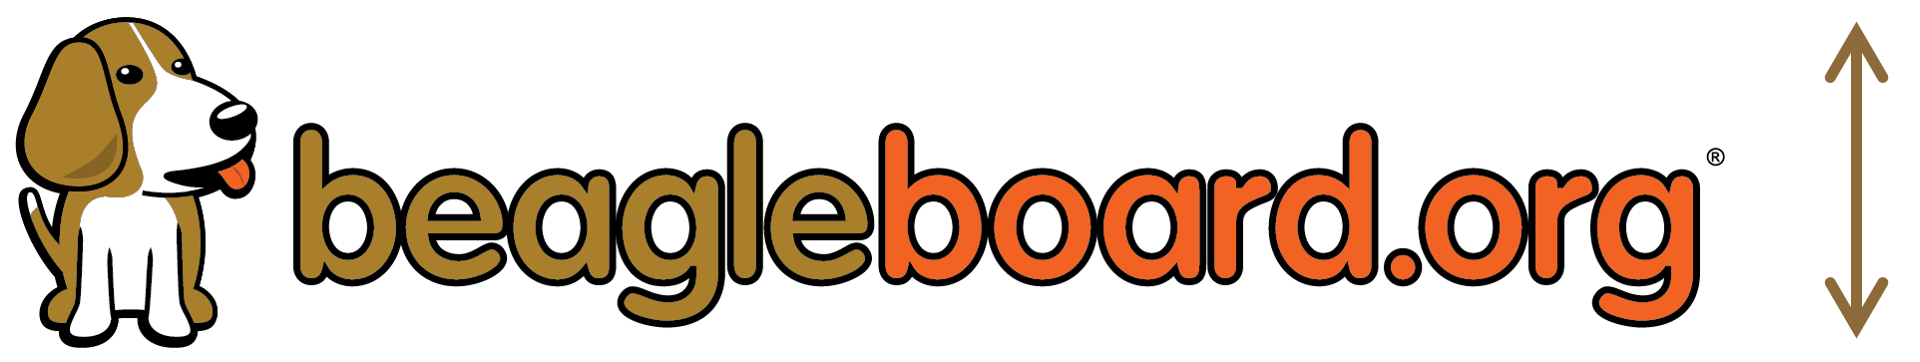 /static/images/beagleboard_org_logo.png